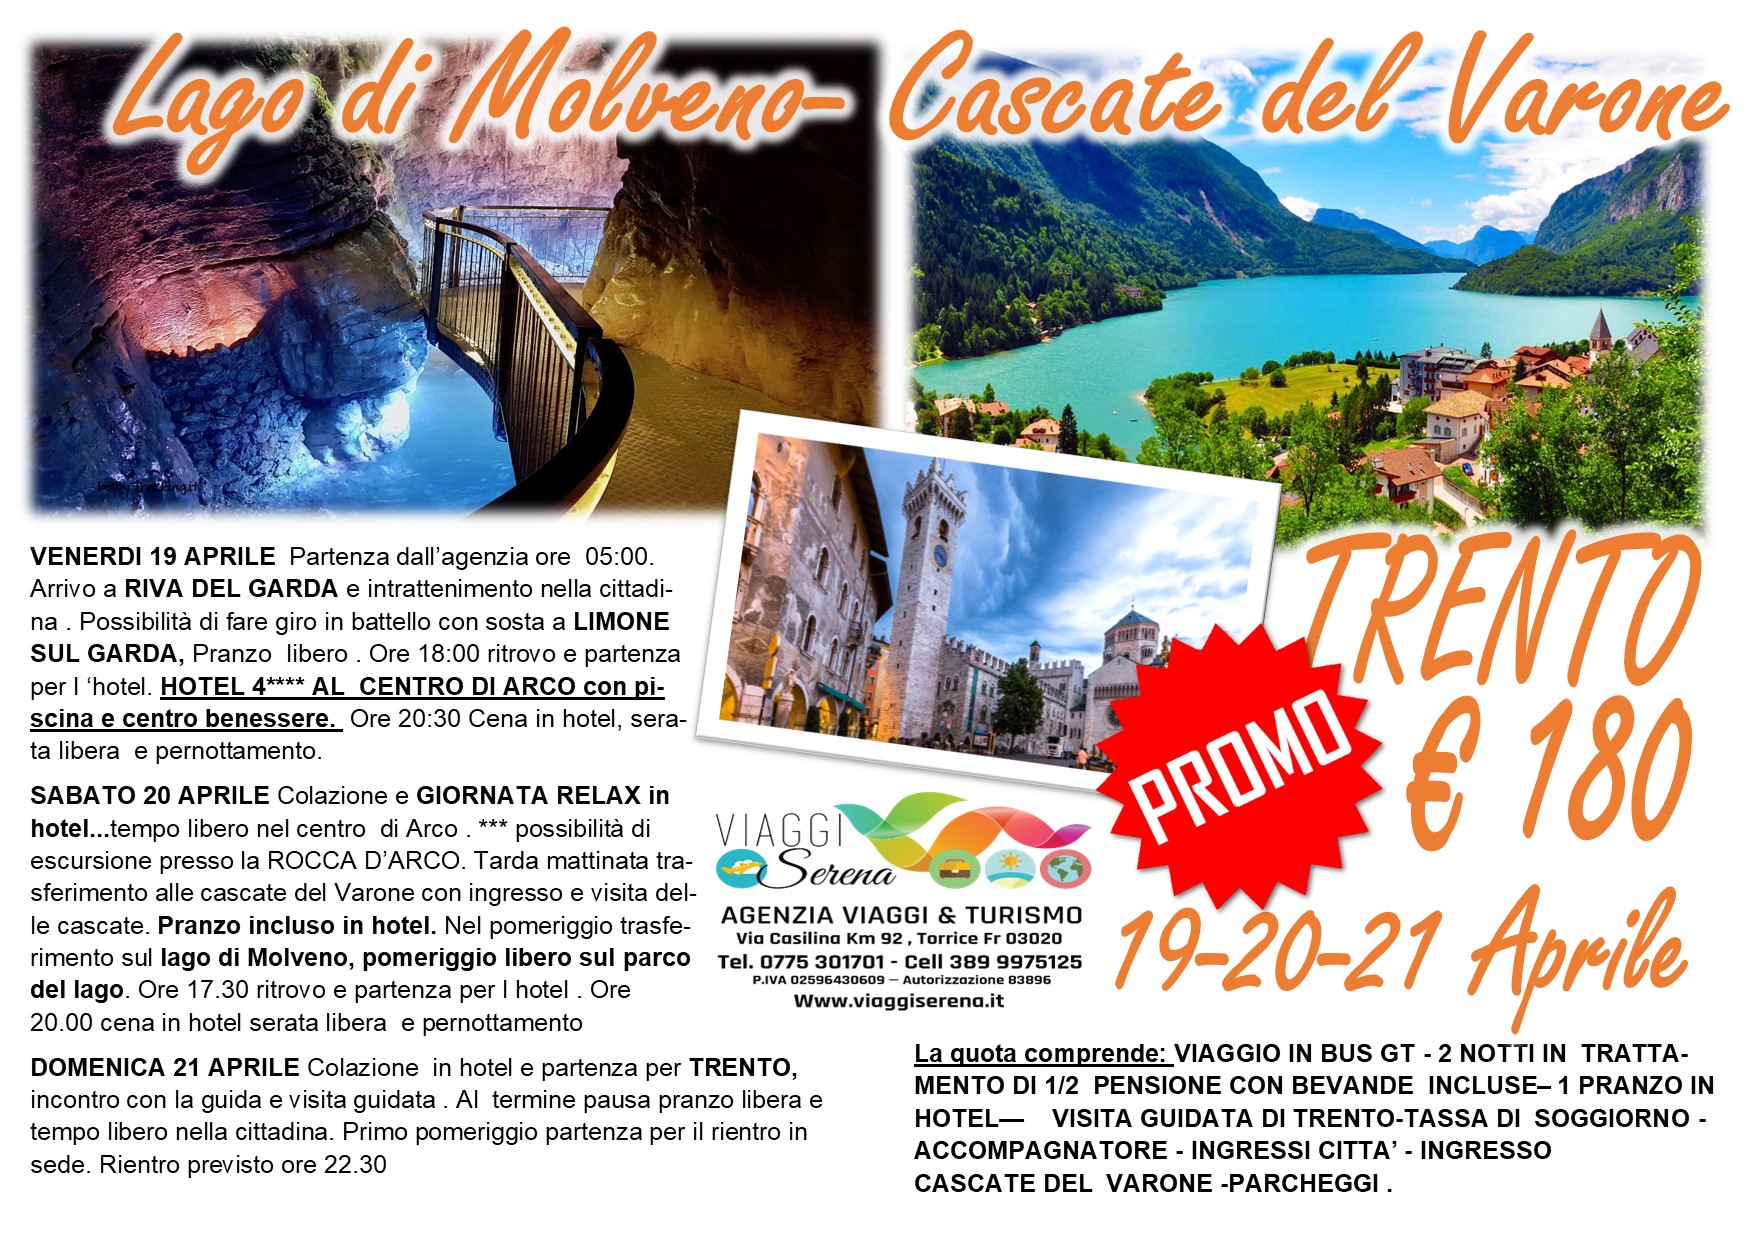 Viaggi di gruppo: Cascate del Varone,  Lago di Molveno, Trento & Arco 19-20-21 Aprile €180,00